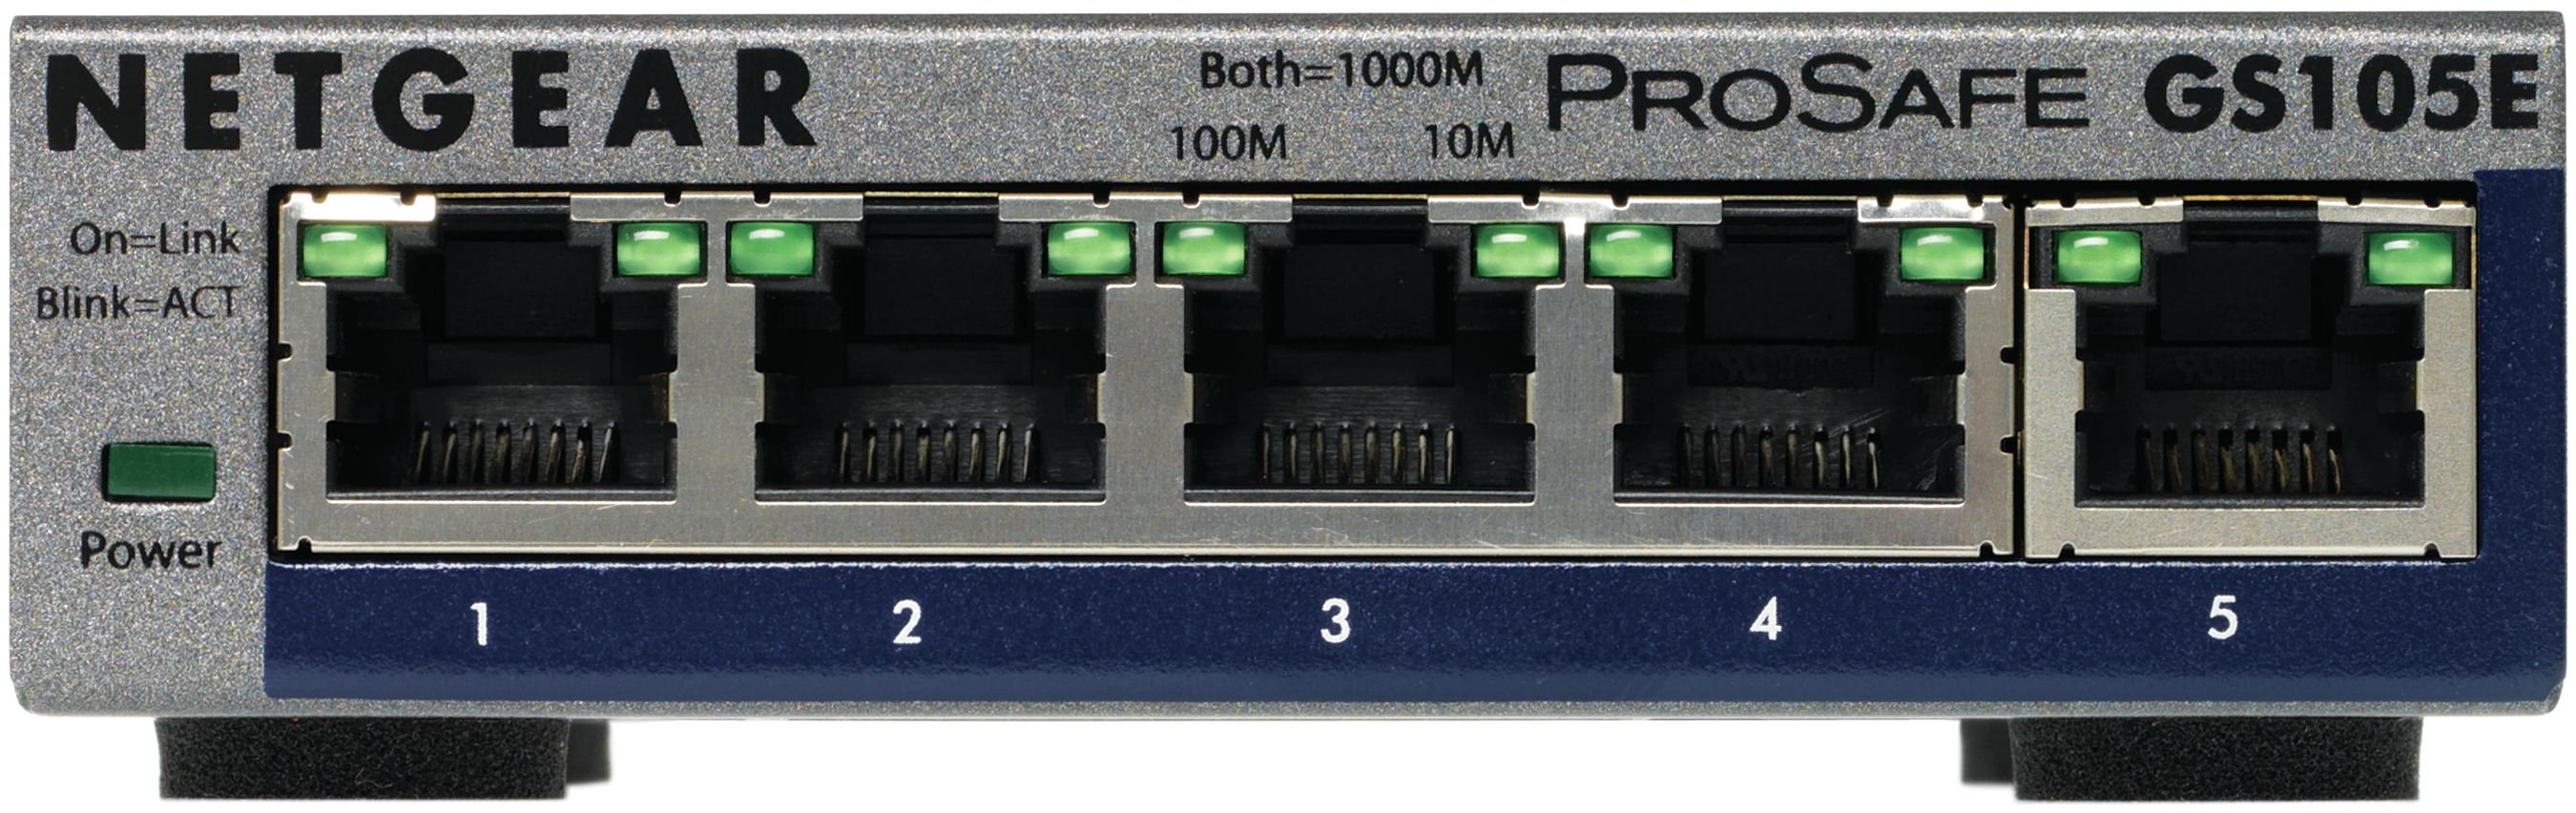  GS105E-200PES ProSafe Plus  5-port Gigabit Ethernet Switch - Switch - unmanaged - 5 x 10/100/1000 - desktop